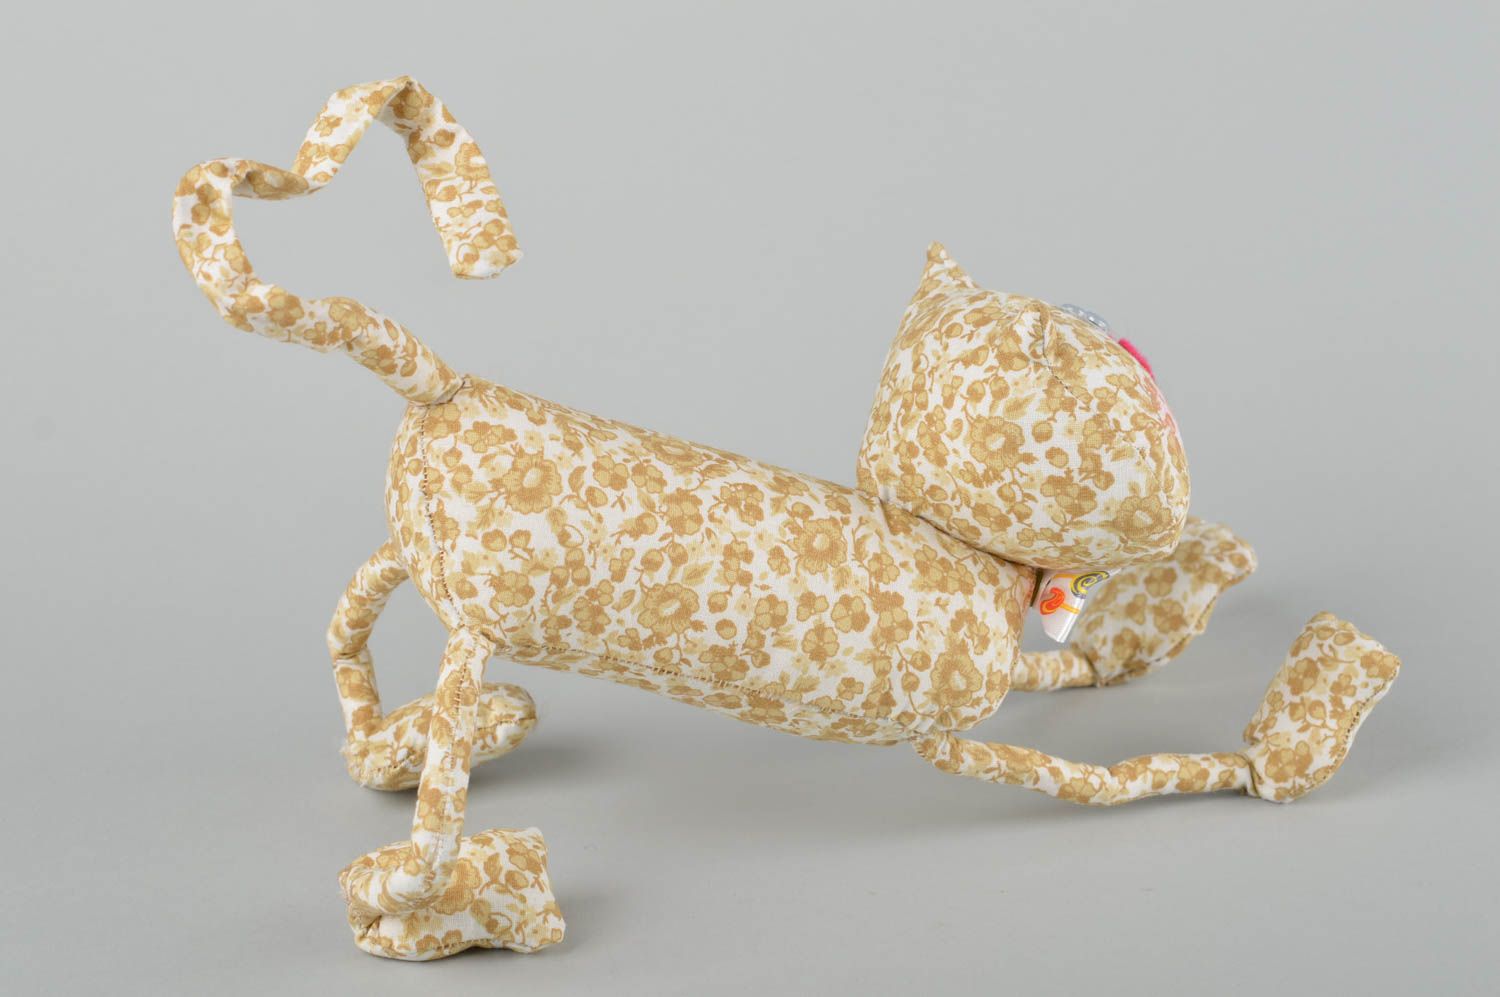 Schönes handmade Stoff Kuscheltier lustiges Stoff Tier kreative Geschenkidee foto 5